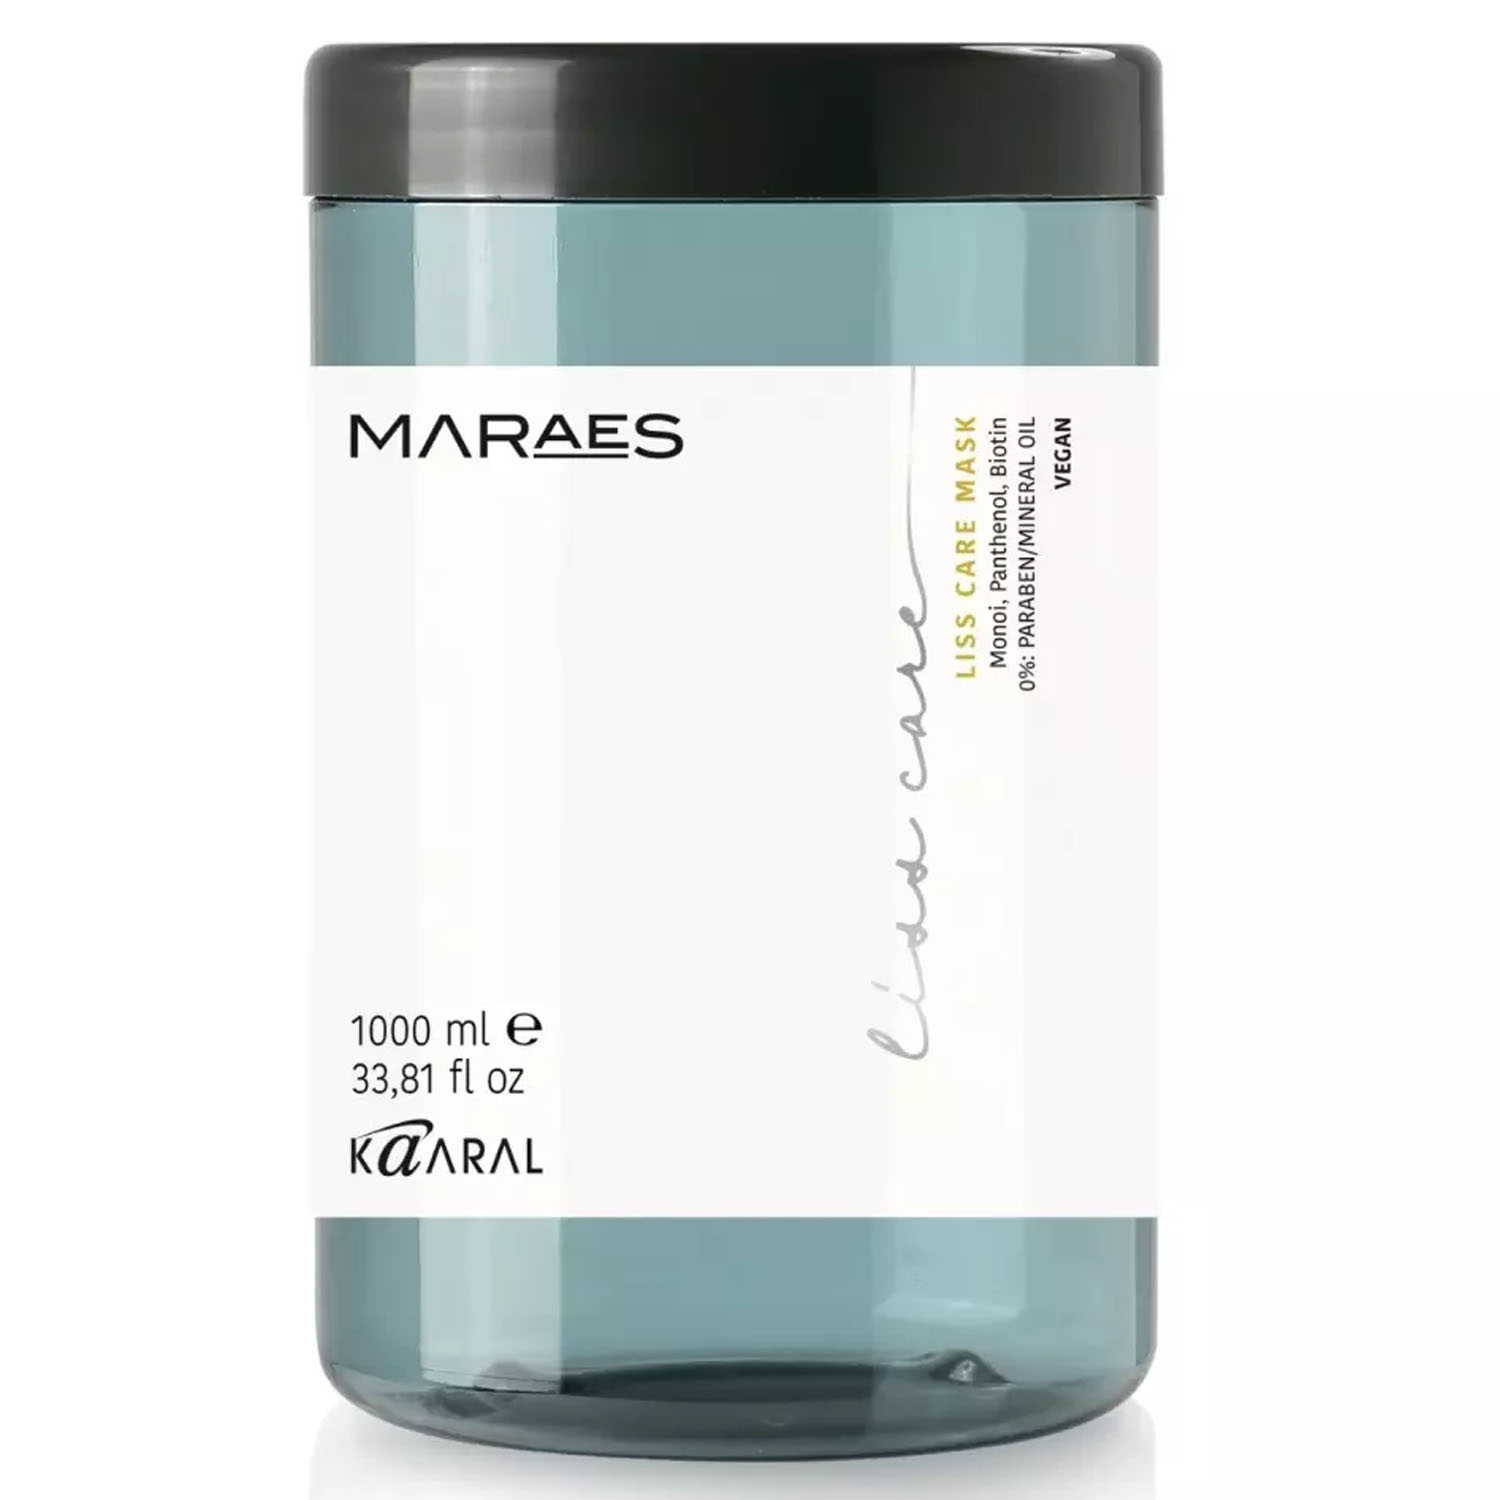 KAARAL, Разглаживающая маска для прямых волос Maraes Liss Care, 1000 мл.